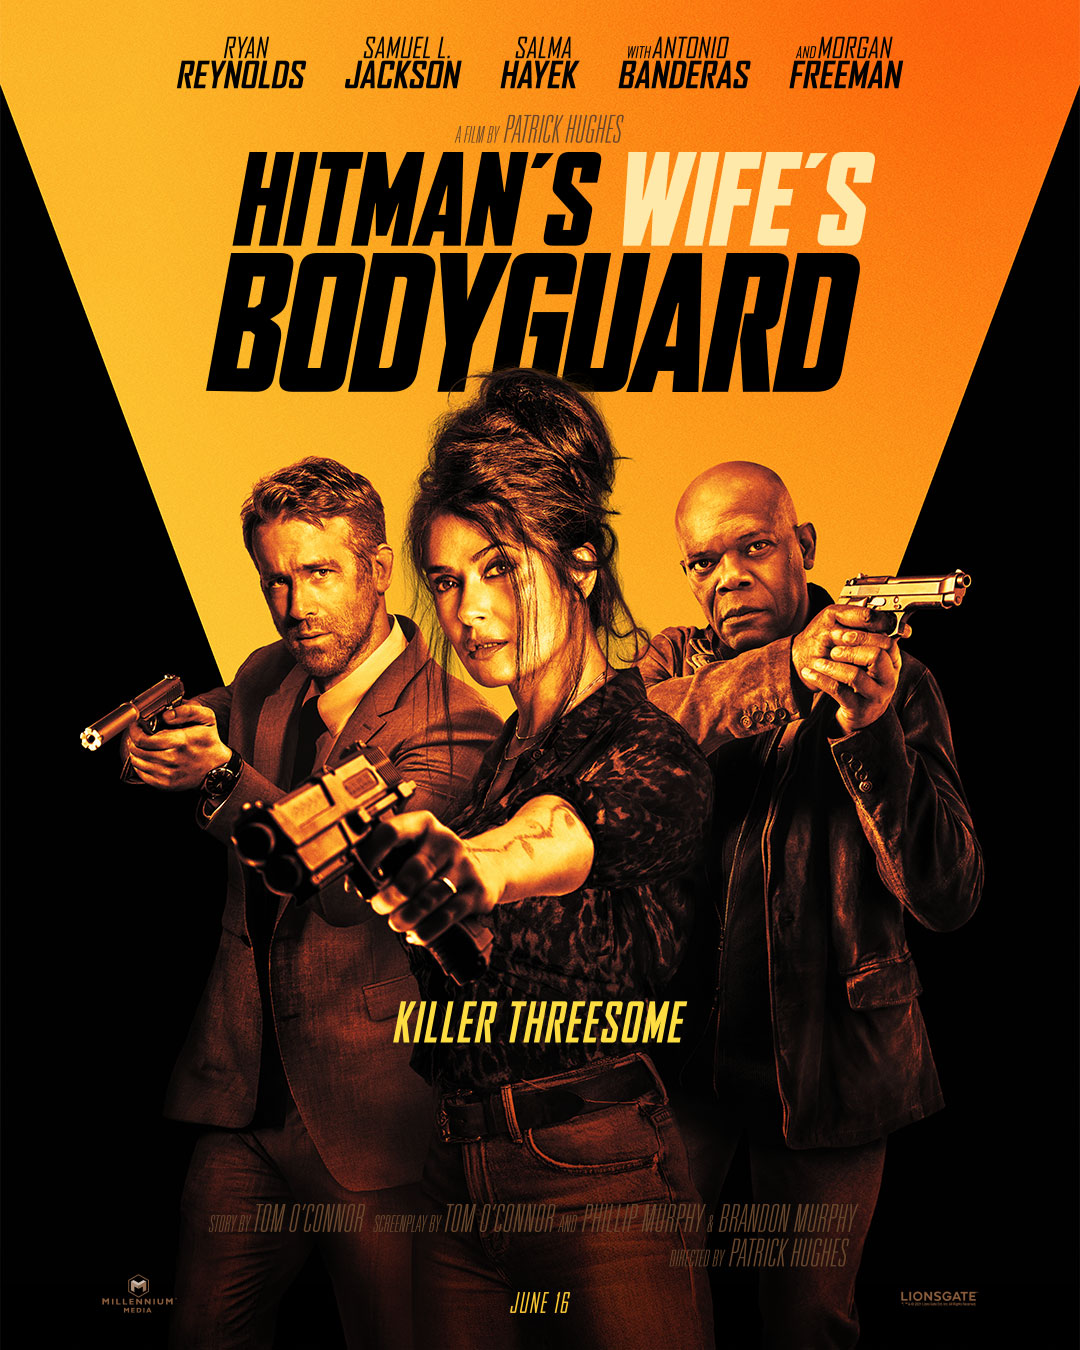 ดูหนังออนไลน์ฟรี The Hitmans Wifes Bodyguard แสบ ซ่าส์ แบบว่าบอดี้การ์ด 2 2021 พากย์ไทย